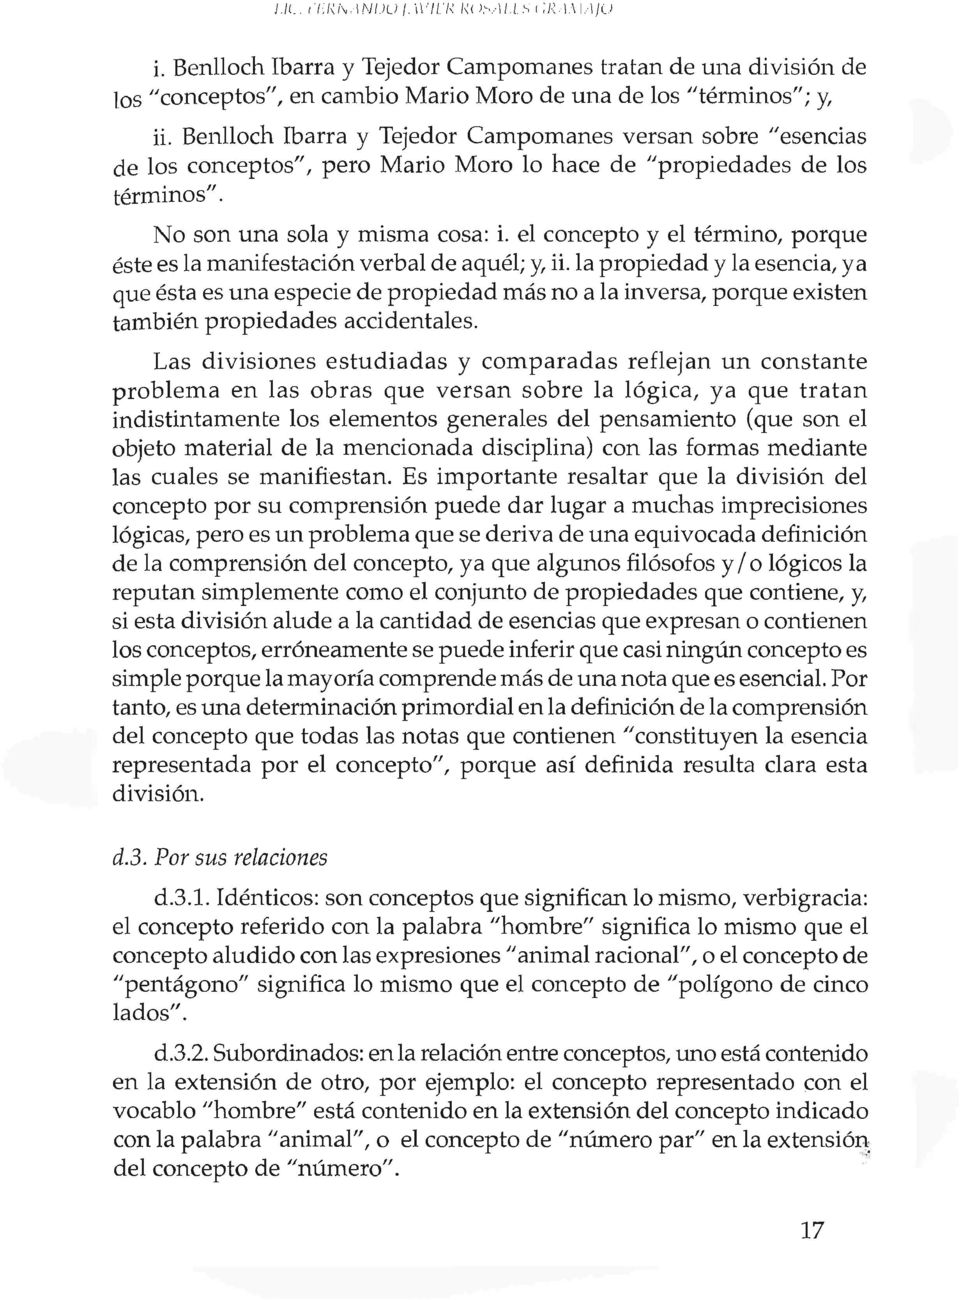 Benlloch Ibarra y Tejedor CaInpomanes versan sobre "esencias de los conceptos", pero Mario Moro lo hace de "propiedades de los terminos '". ". No son una sola y misma cosa: i.